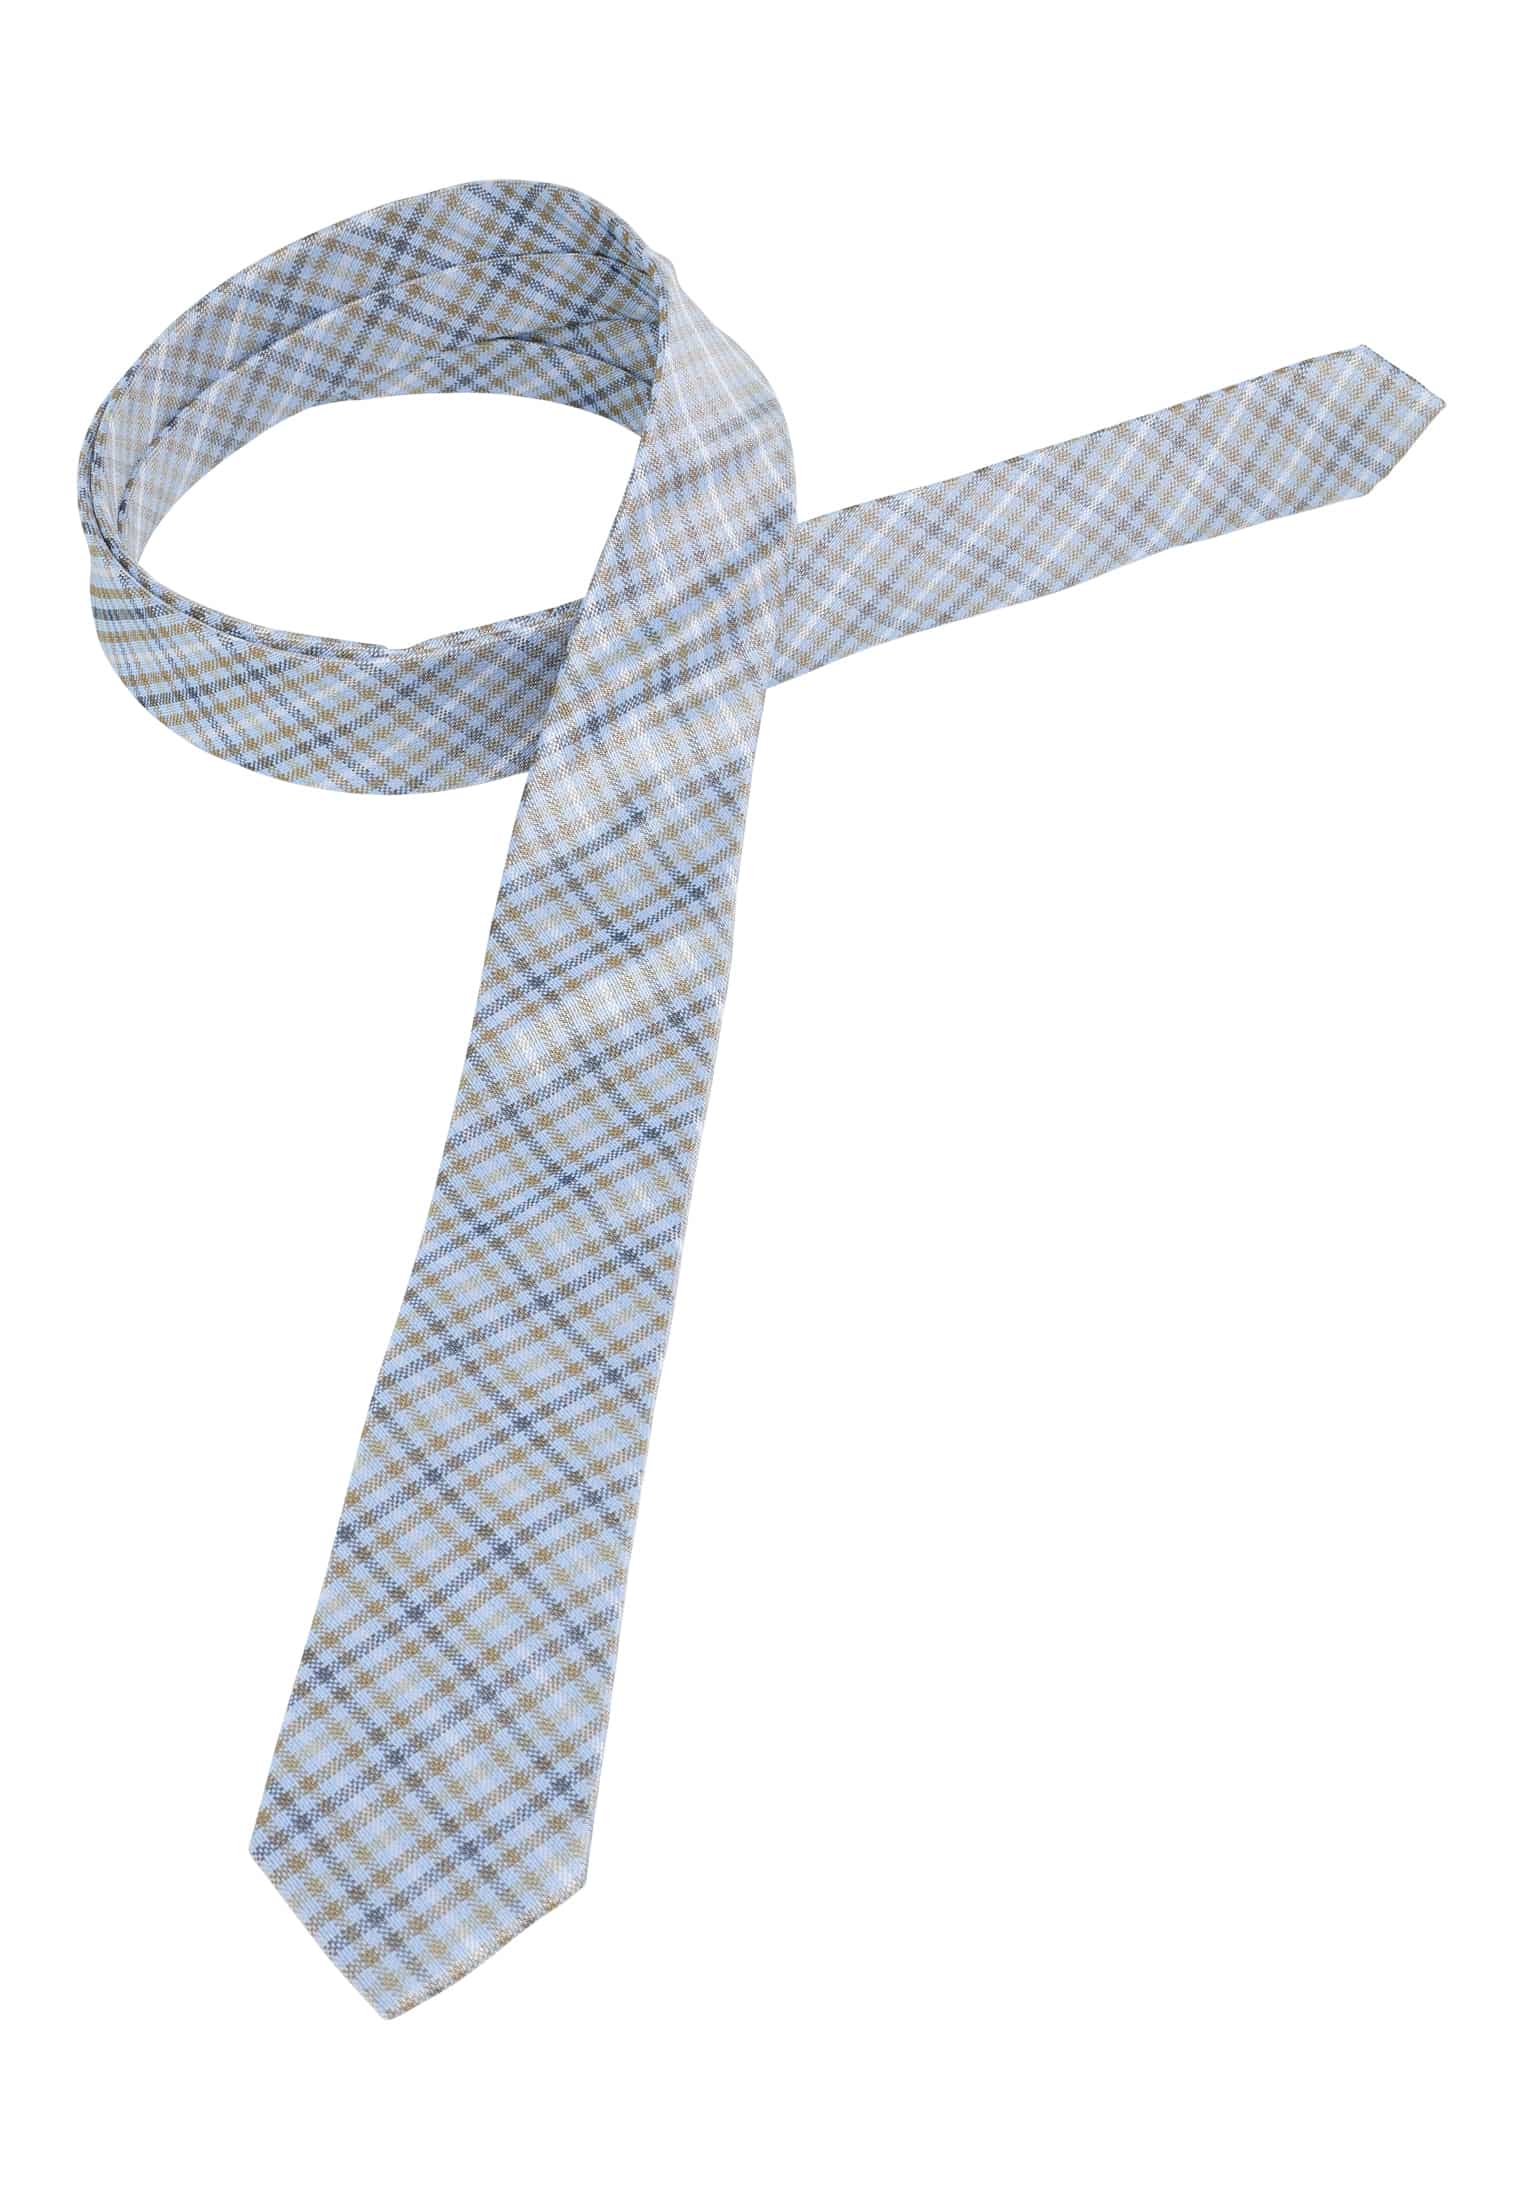 Krawatte in | | 1AC01998-81-48-142 blau/grün | 142 kariert blau/grün